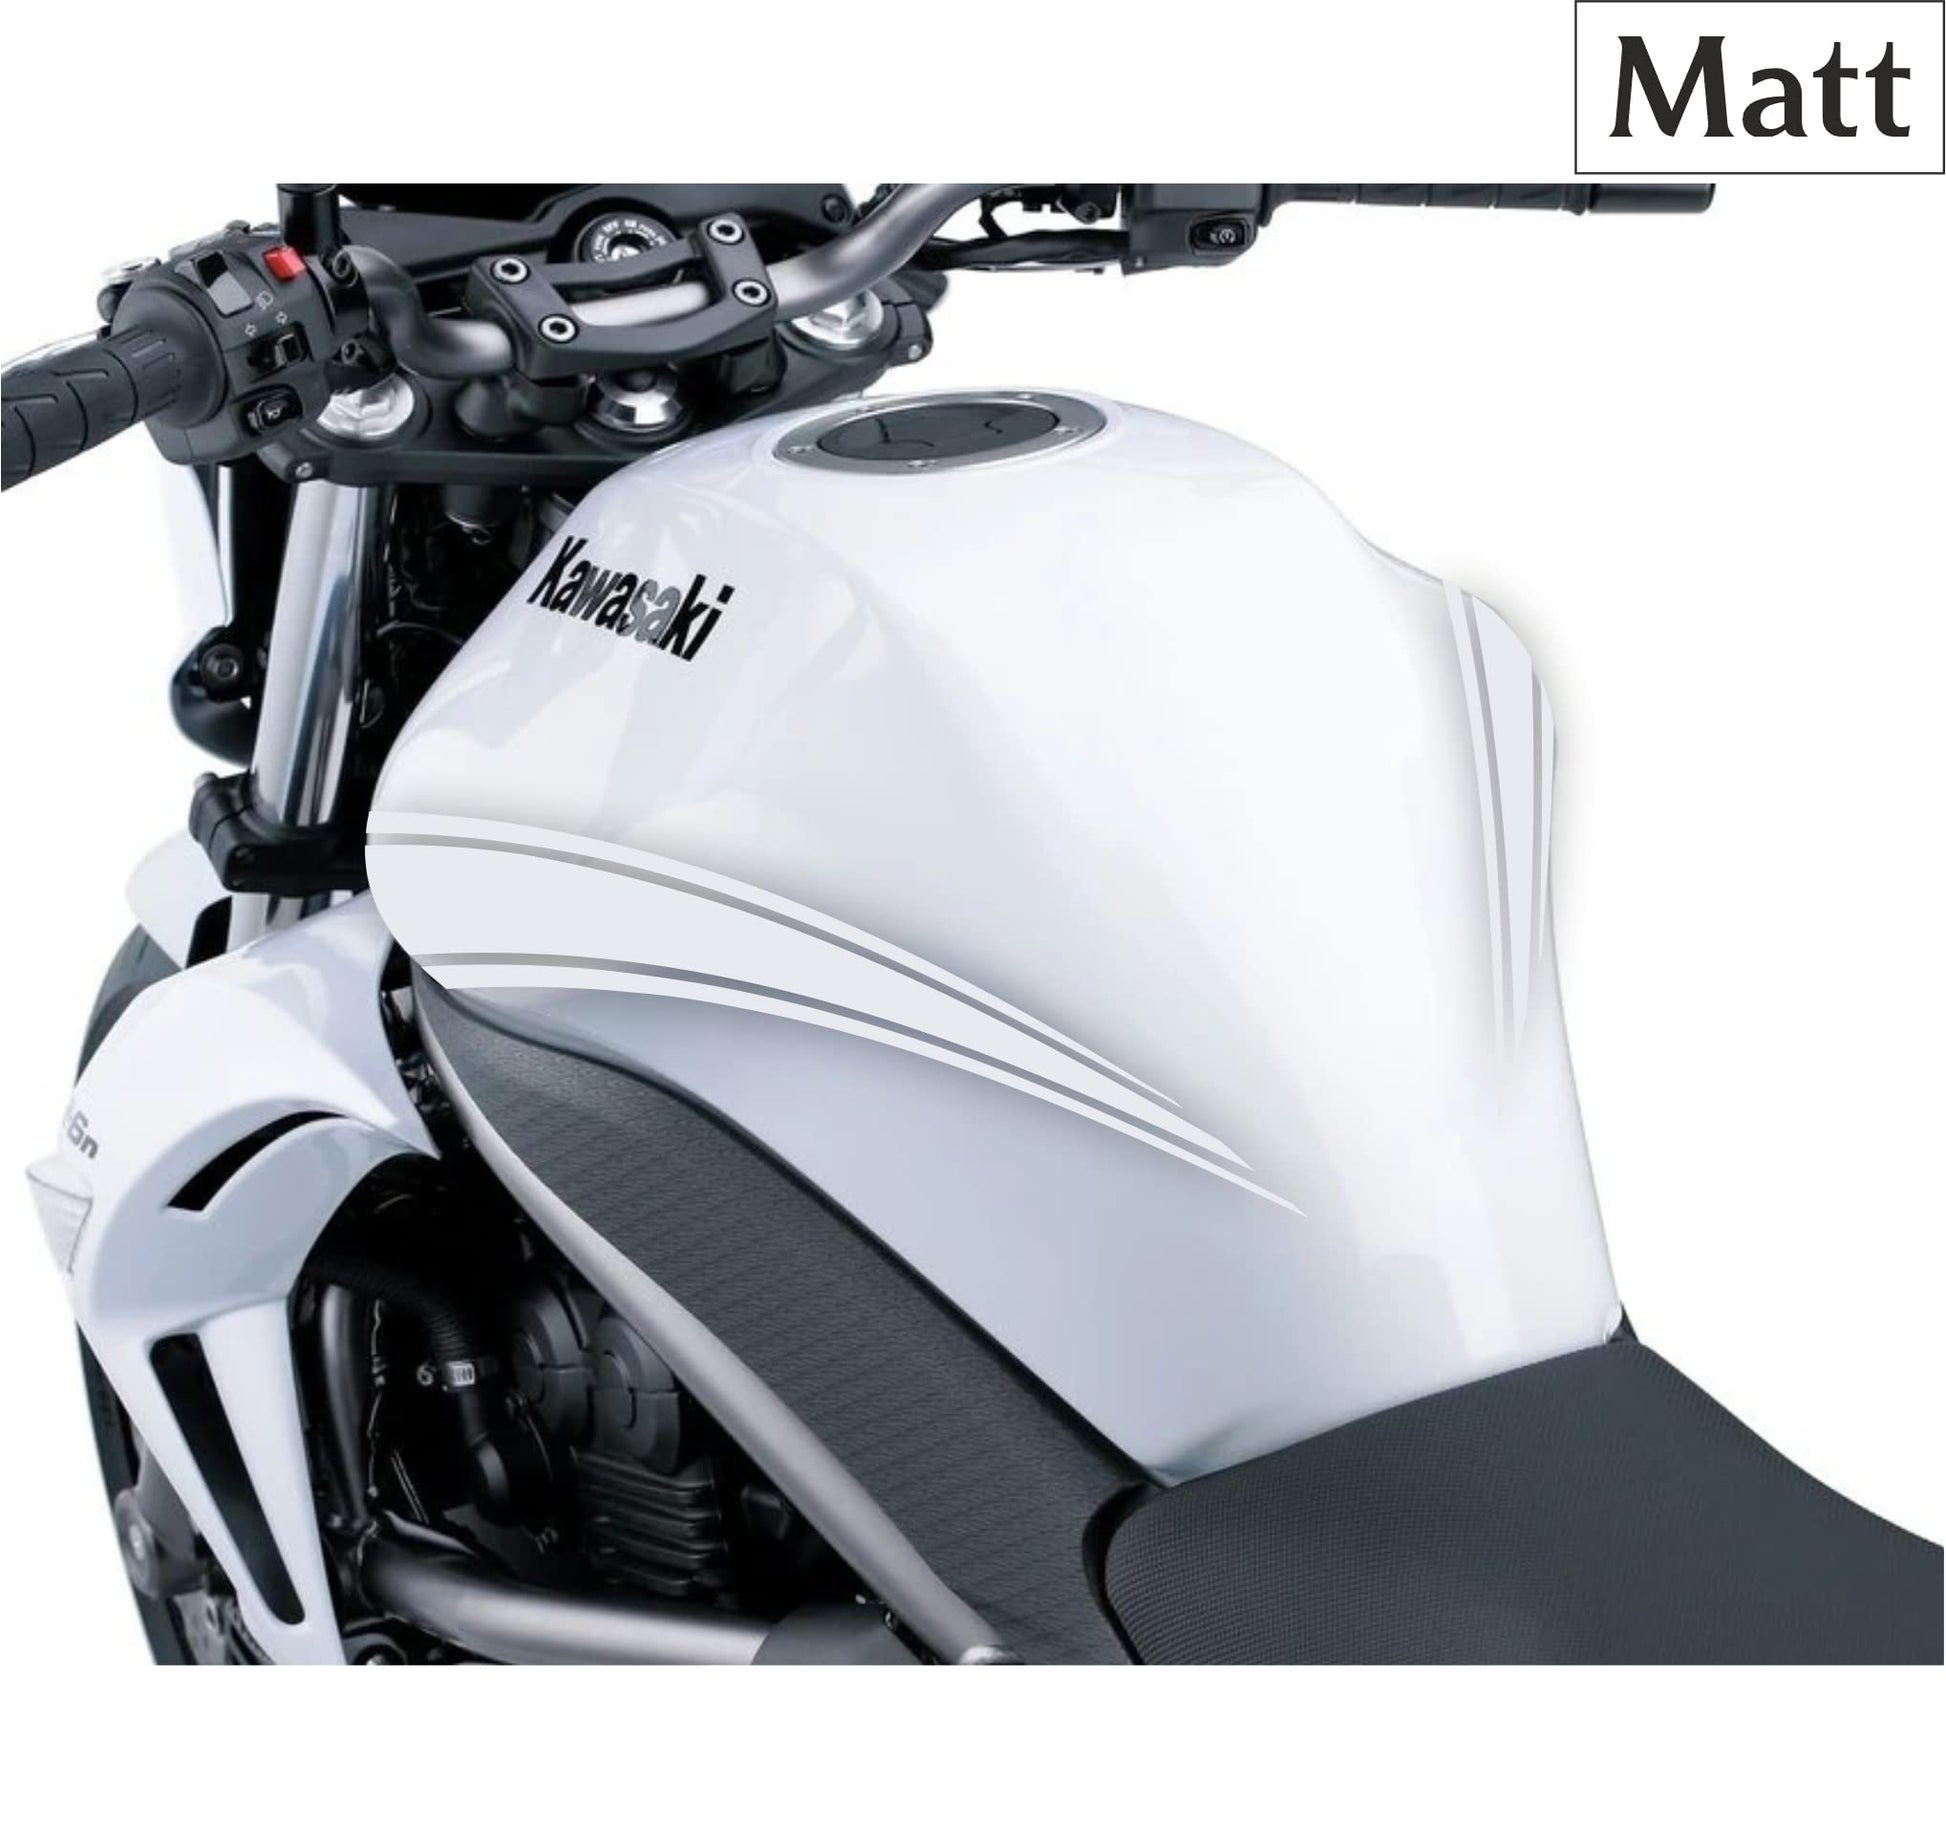 DualColorStampe Adesivi Compatibili con Kawasaki ER-6N (2009-20011) serbatoio DX-SX stickers Moto Motorbike COD.M0147 a €39.99 solo da DualColorStampe